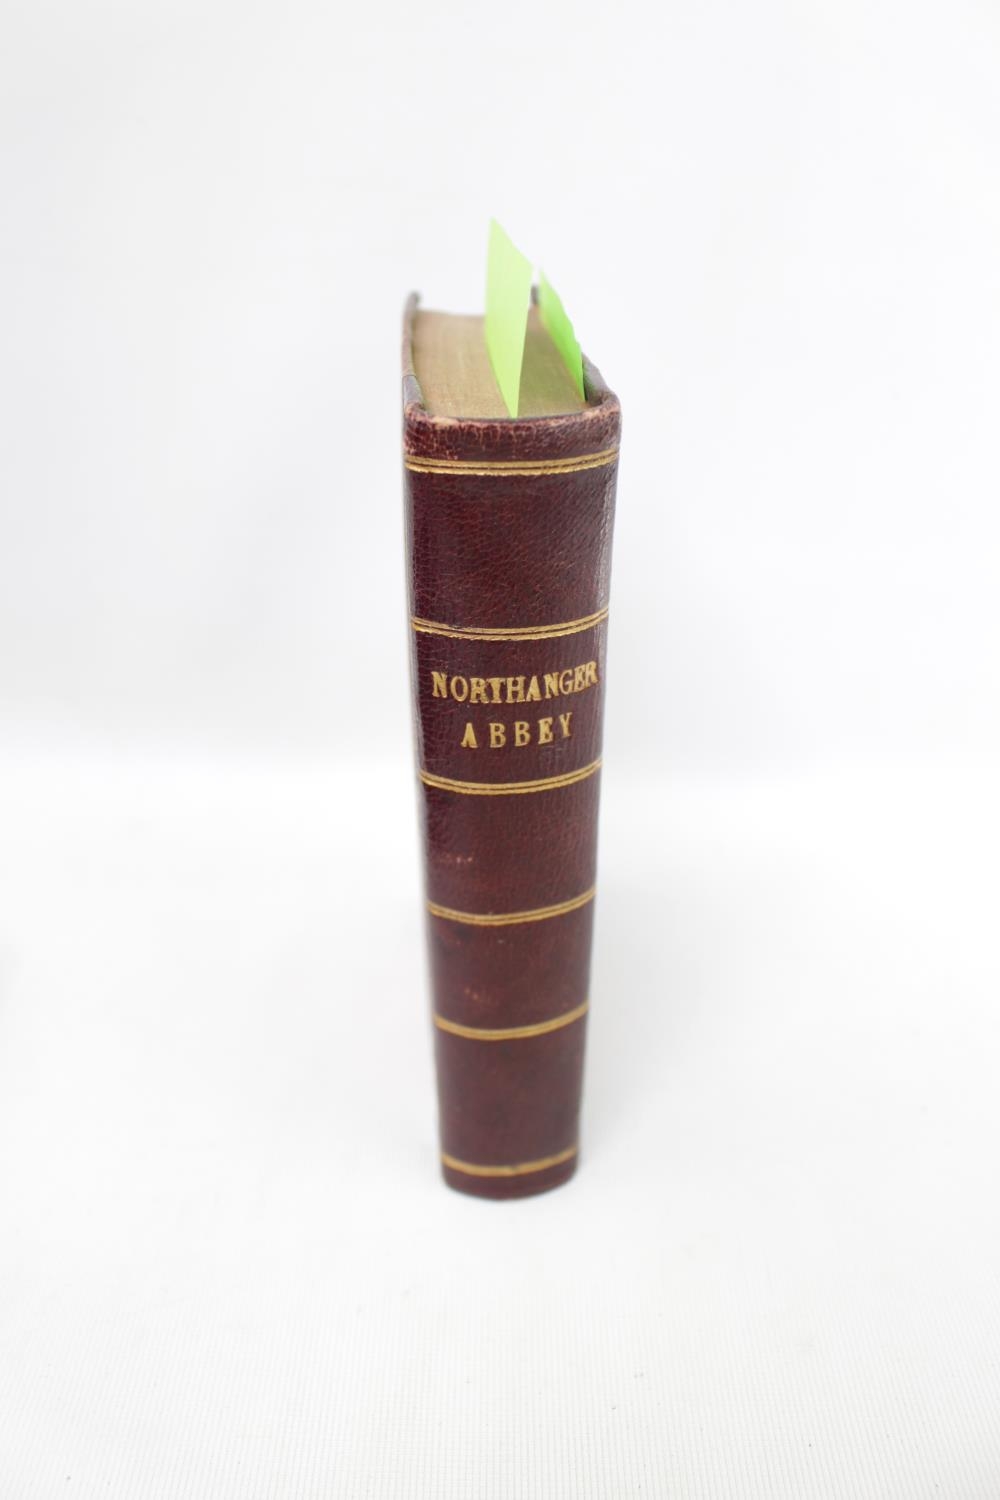 Jane Austen. Northanger Abbey & Persuasion. Richard Bentley. 1833 2 Volumes bound in One